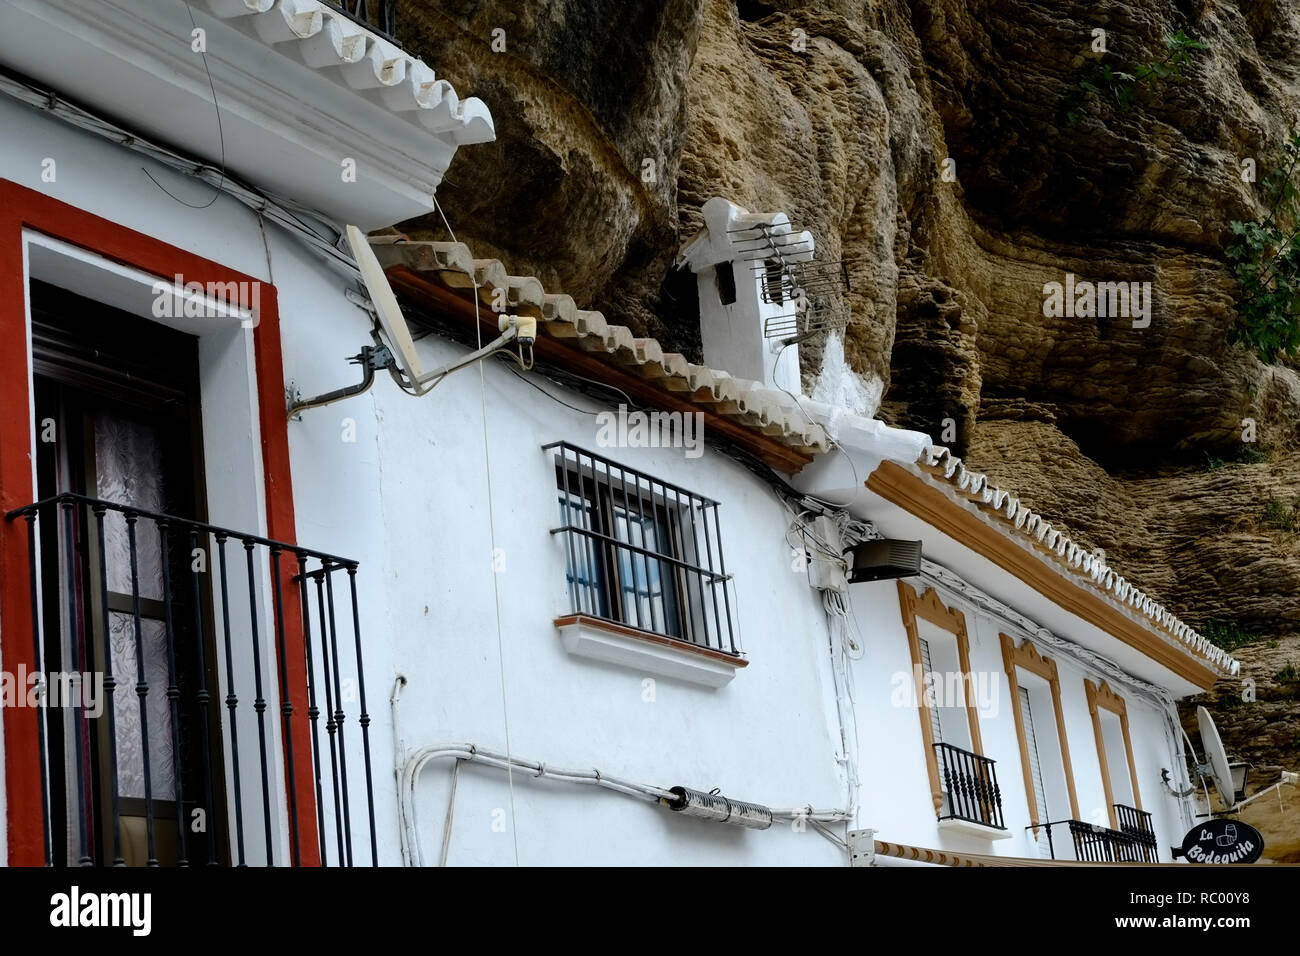 Häuser in die Klippen und Höhlen gebaut. Setenil de las Bodegas, Andalusien. Spanien Stockfoto